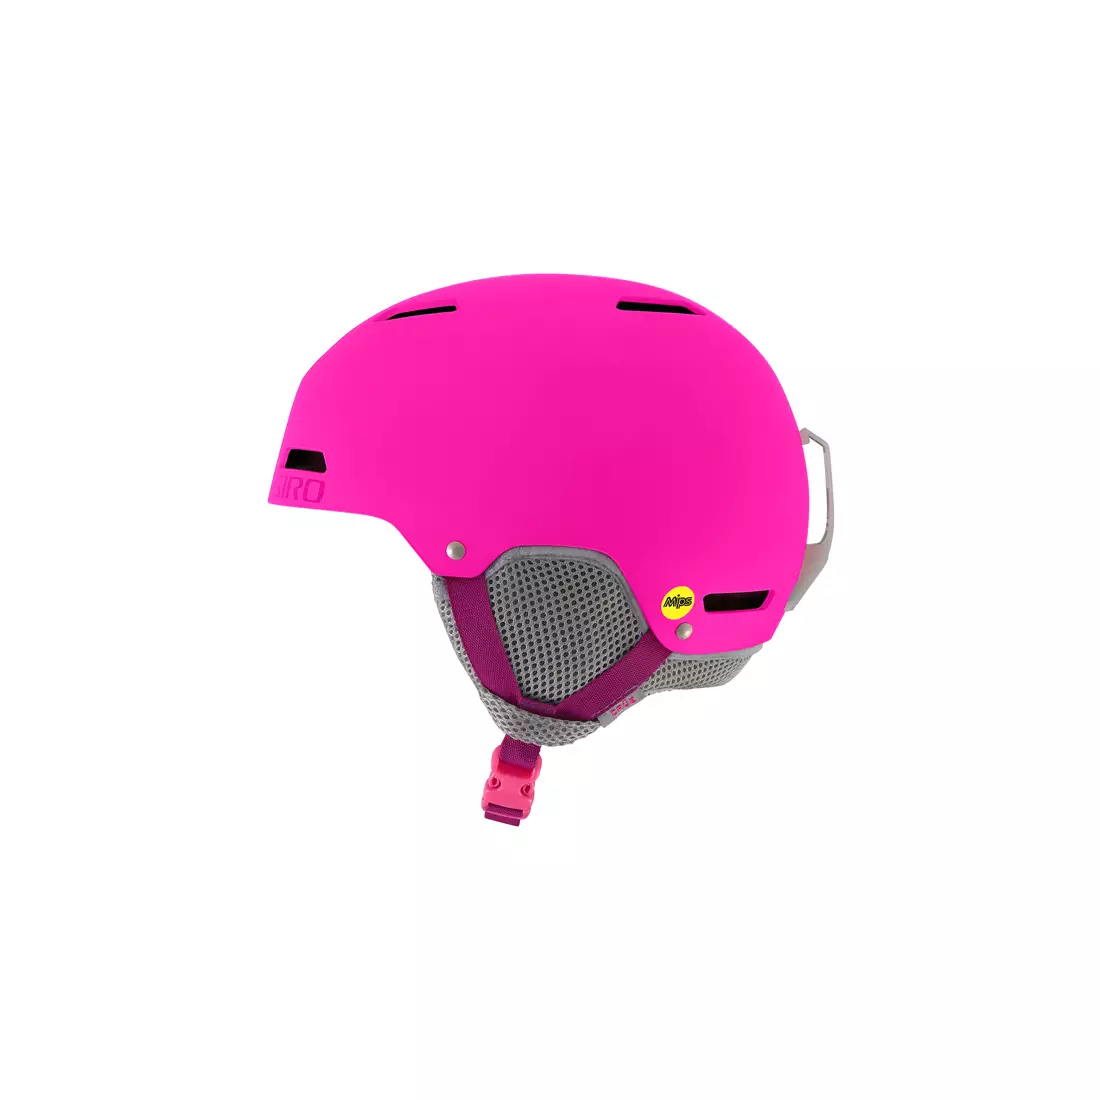 GIRO children's ski/snowboard winter helmet crue mips matte bright pink GR-7094079